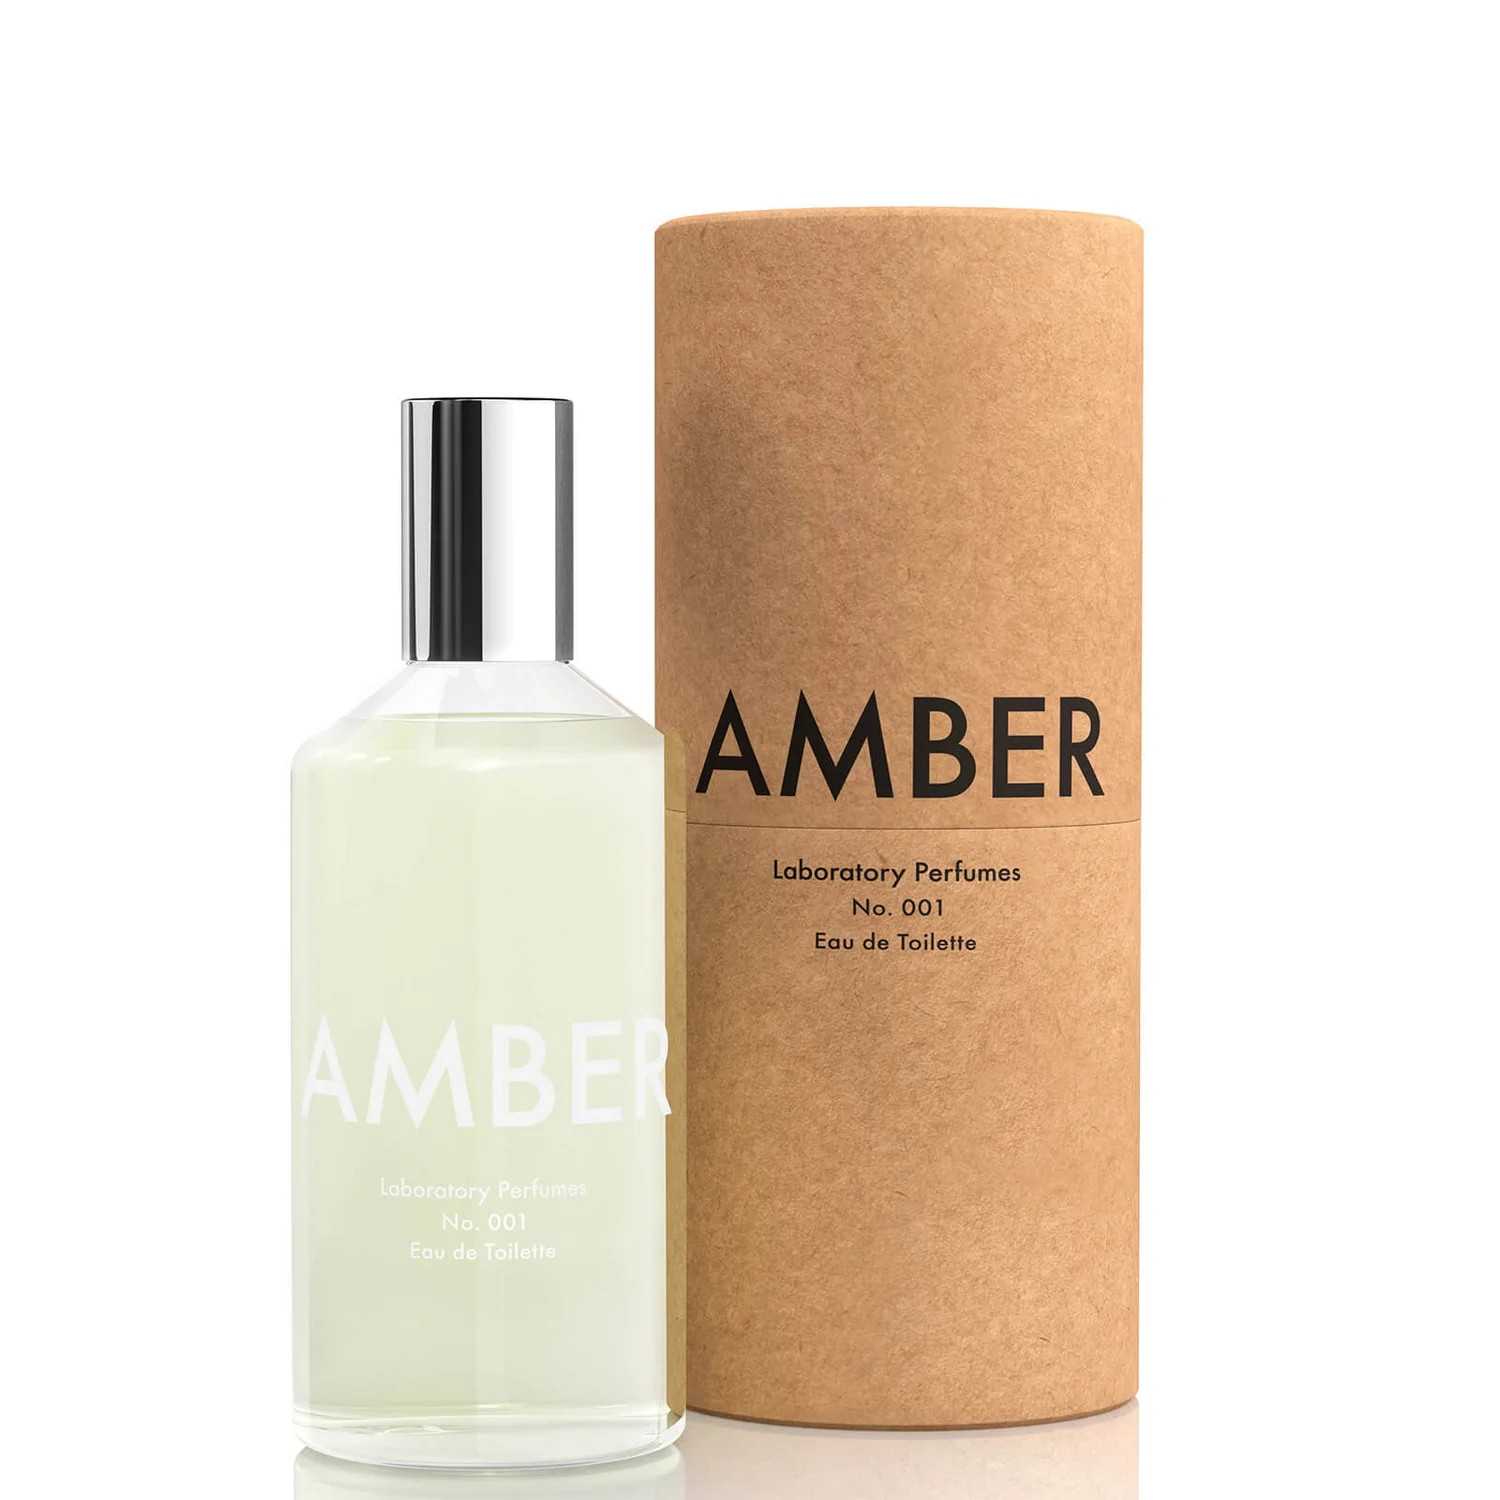 cultbeauty.co.uk | Laboratory Perfumes Amber